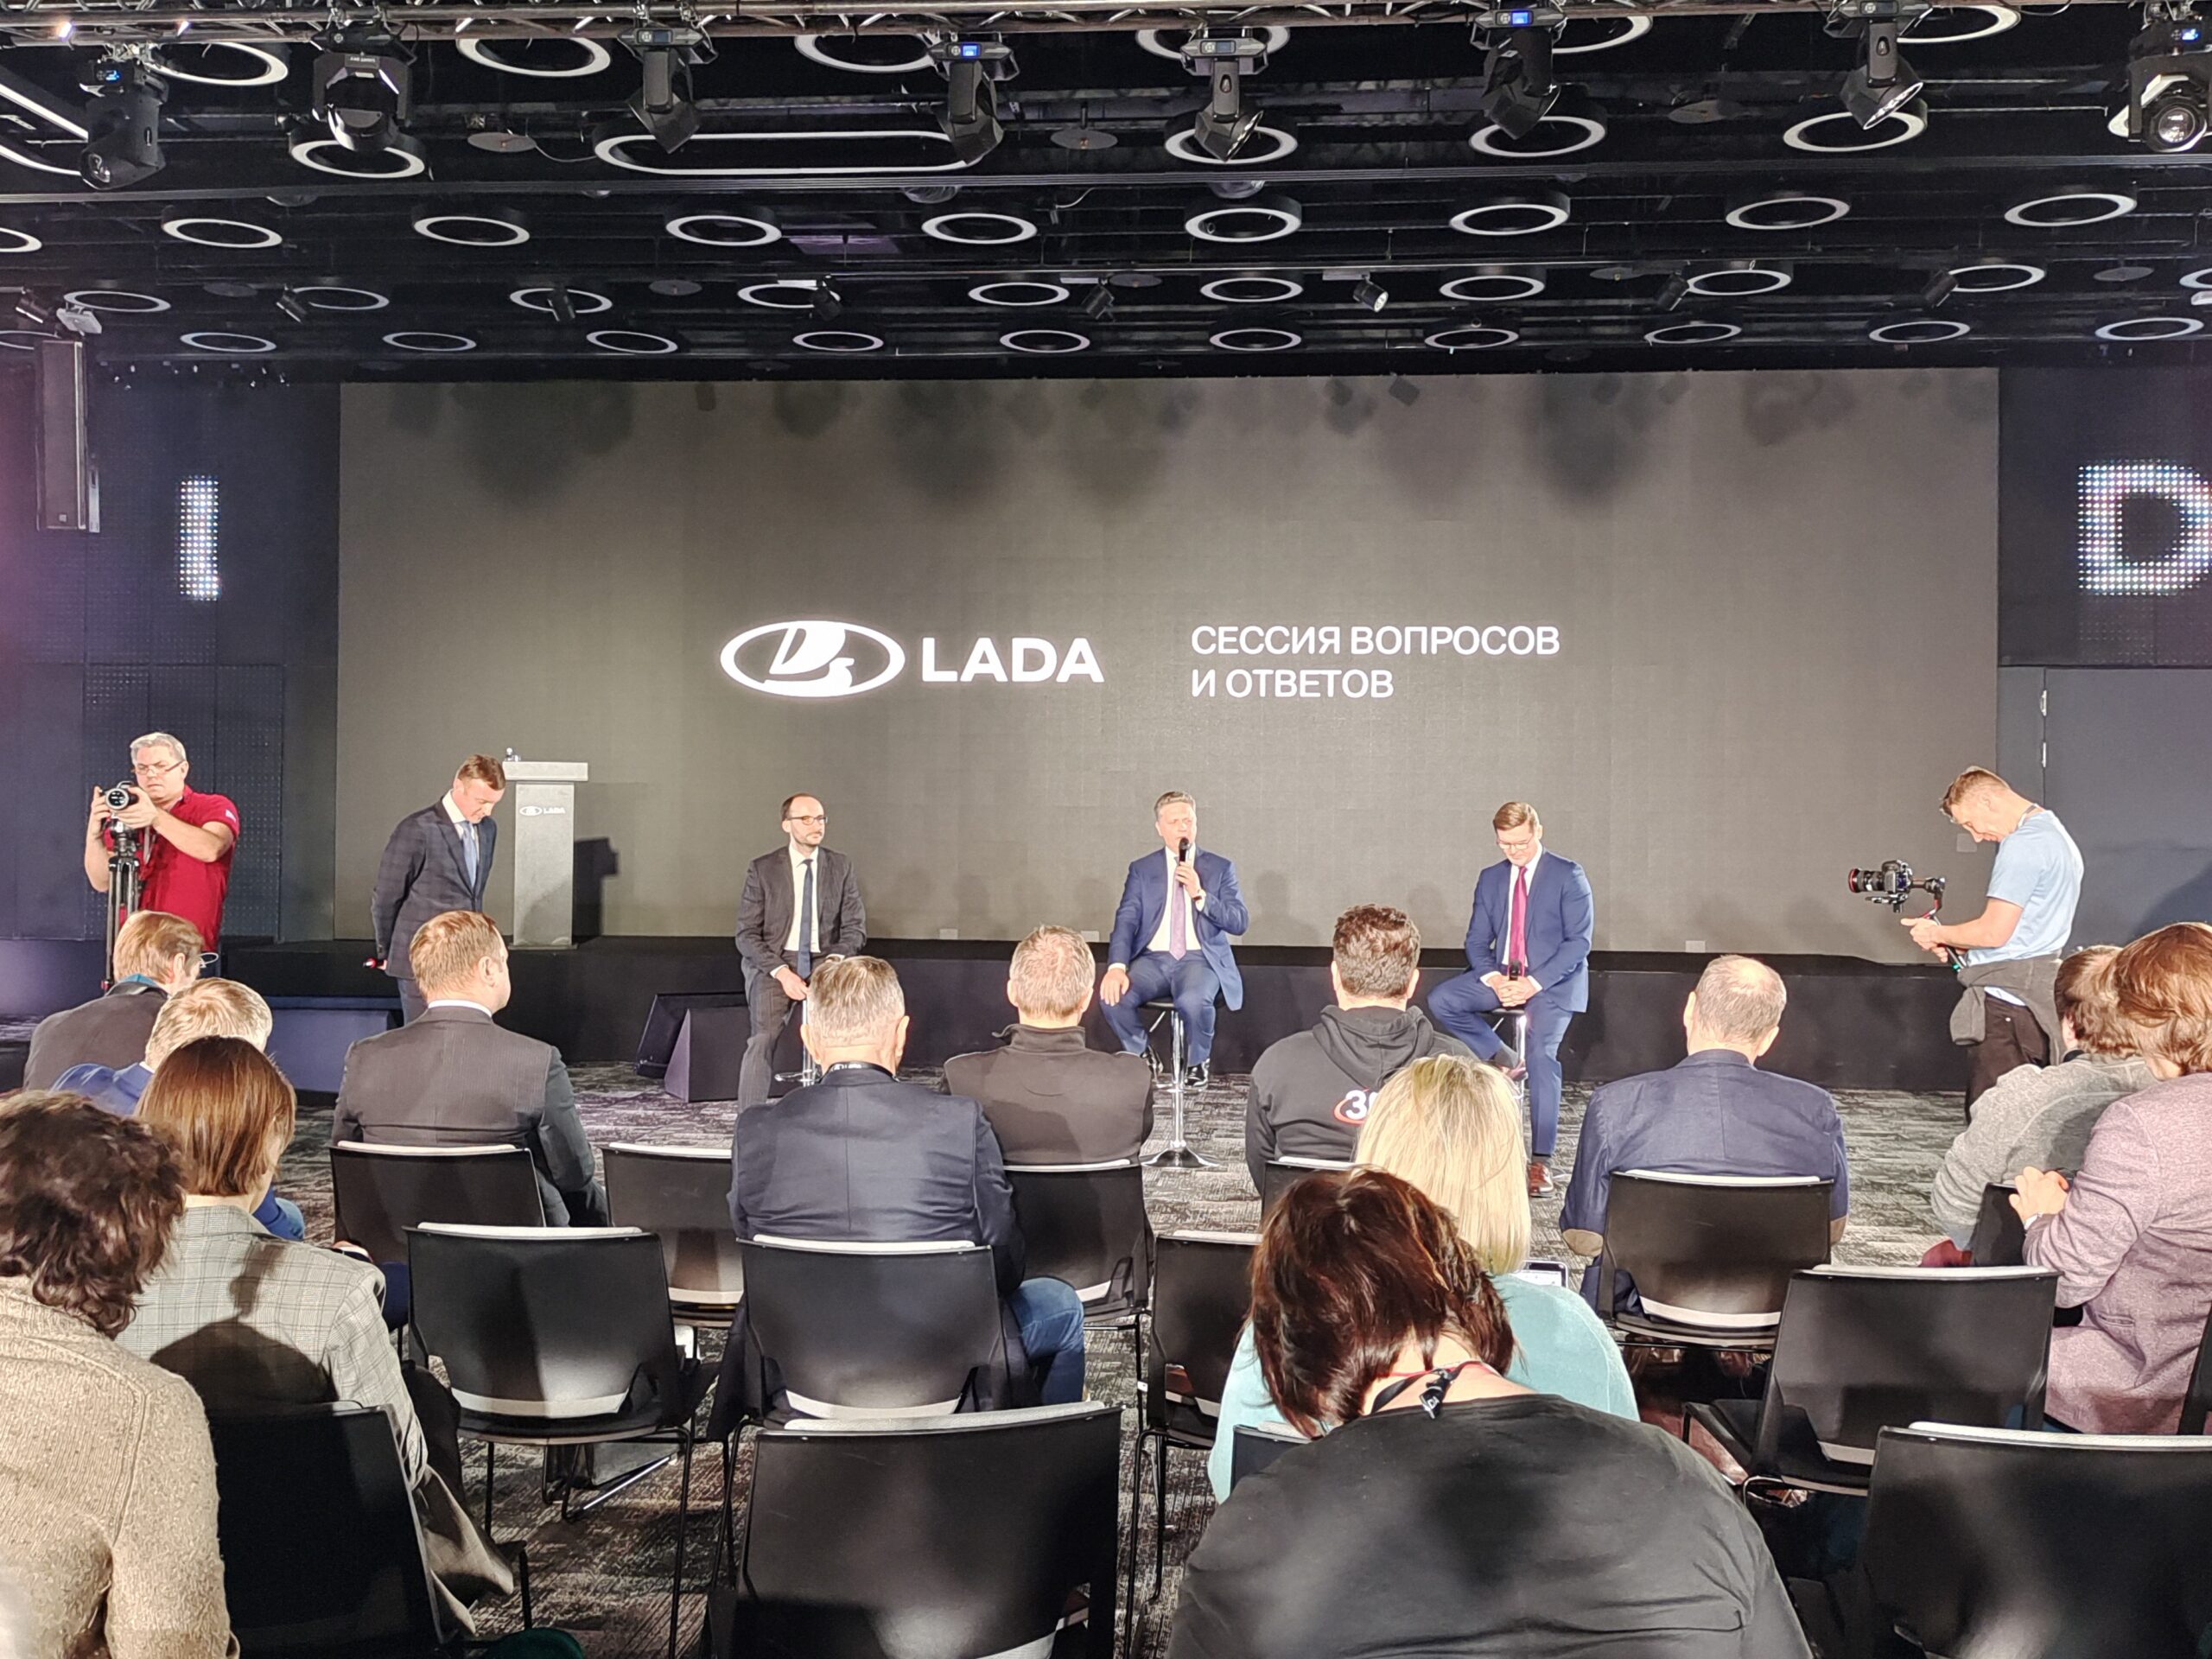 Объявлены планы выхода Lada Vesta и Largus в 2023 году. И что будет на бывшем заводе Nissan под Питером?